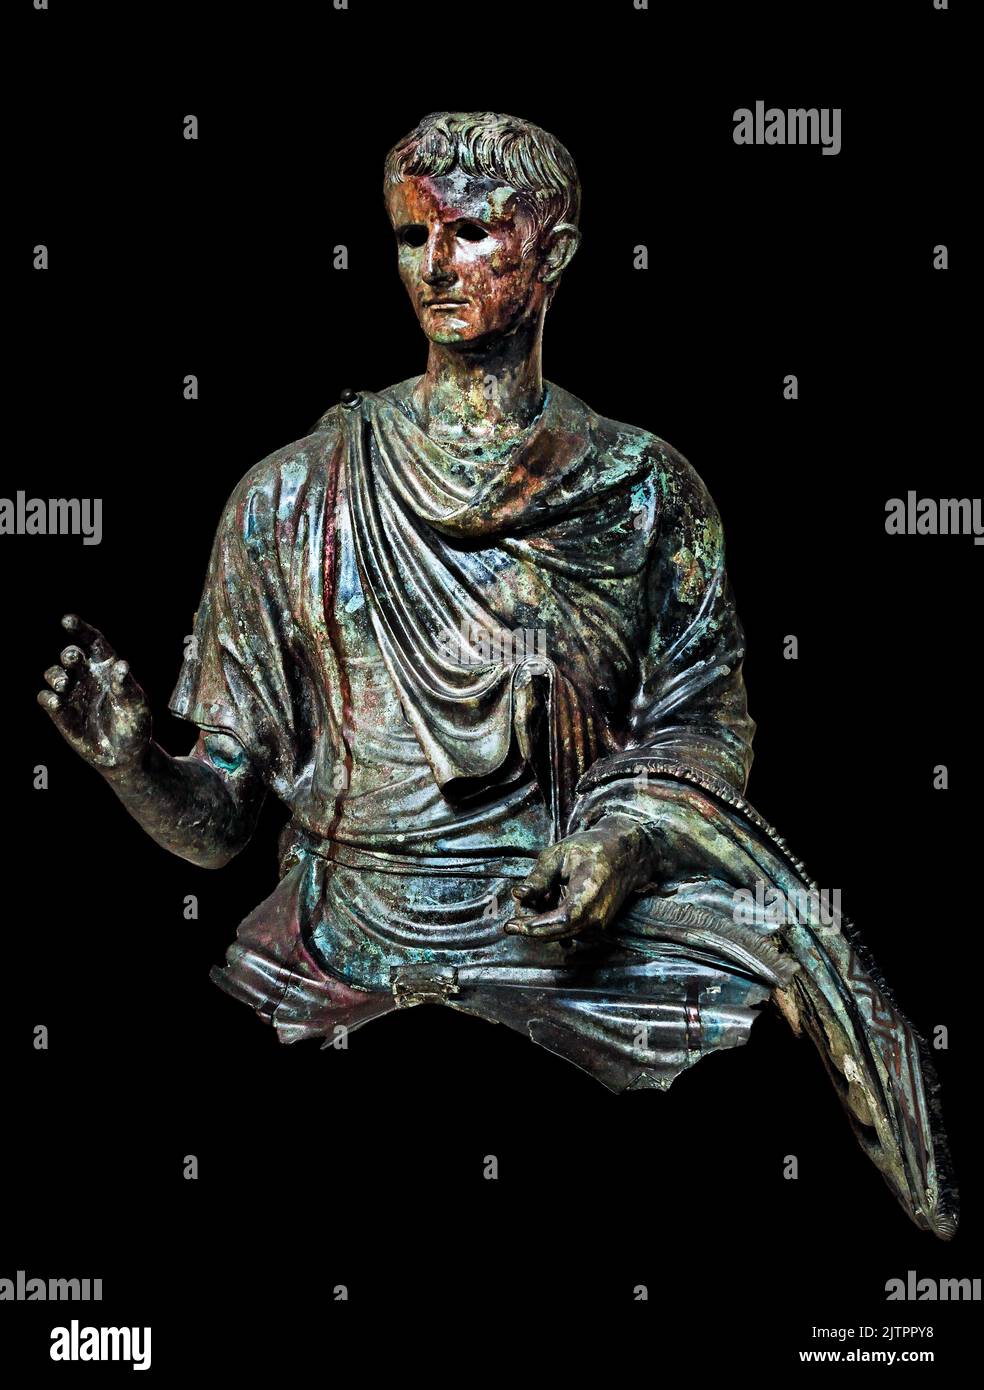 Estatua romana de bronce, emperador romano Augusto, 12-10 aC, encontrada en el mar de Agean, Isla de Euboea, Museo Arqueológico Nacional de Atenas. Foto de stock